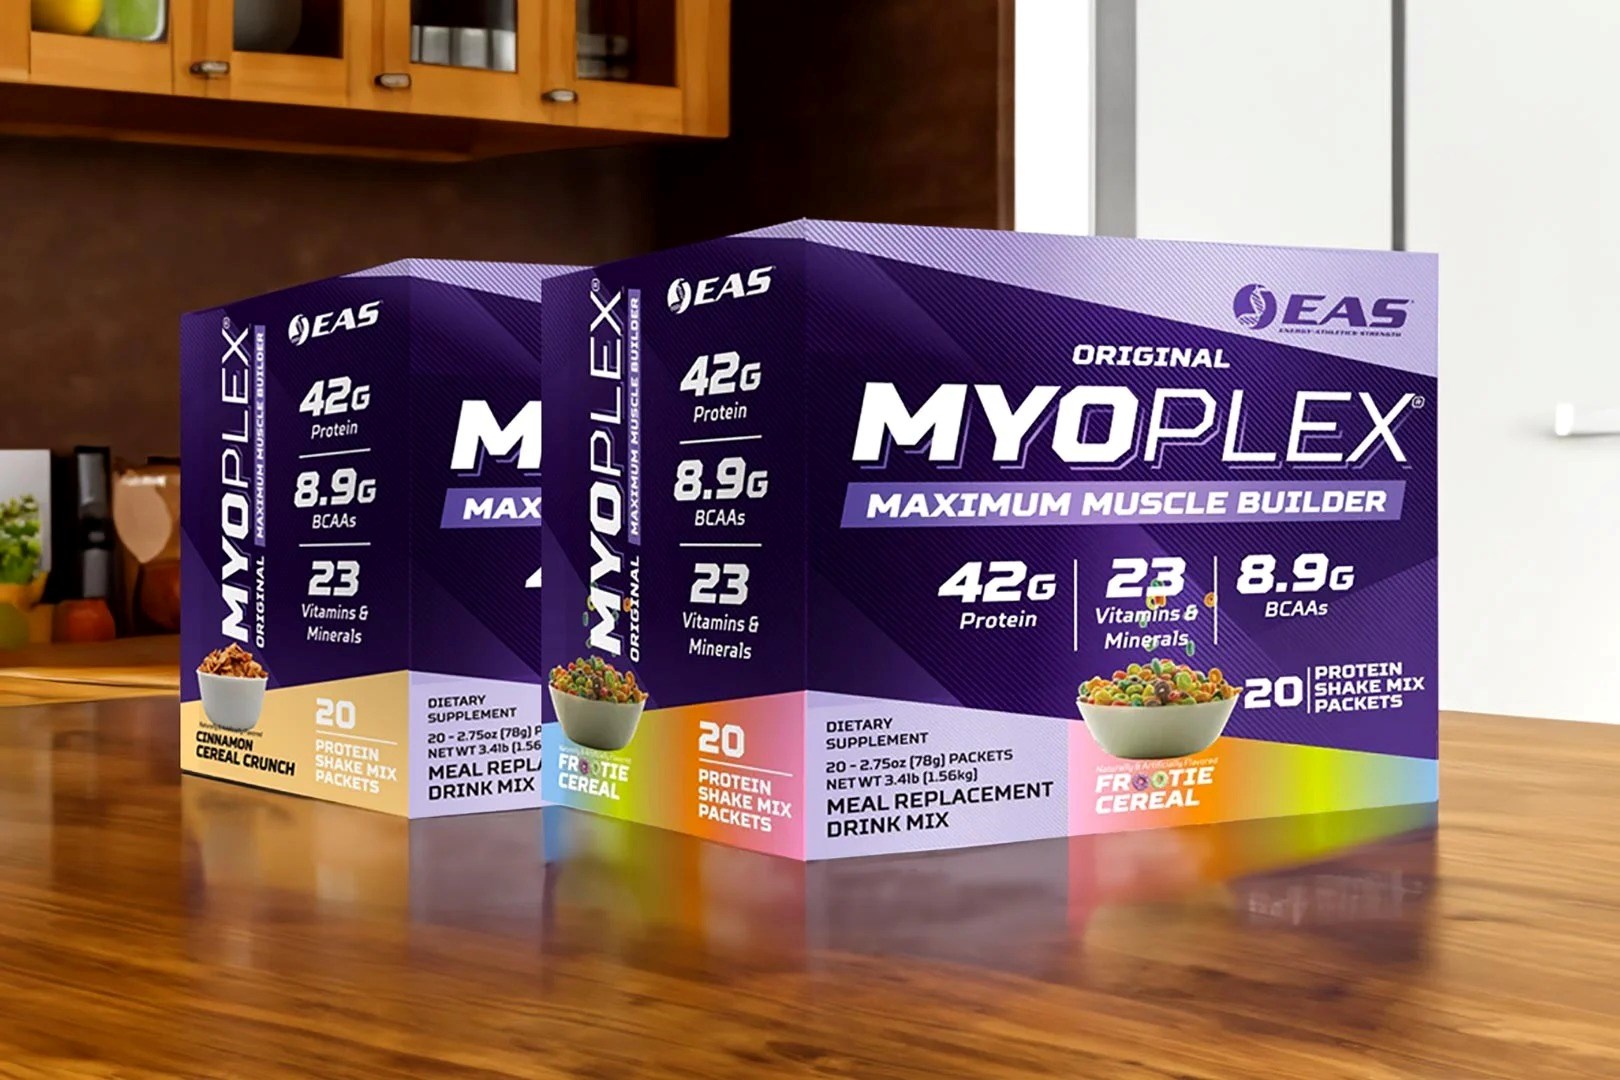 20-eas-myoplex-nutrition-facts